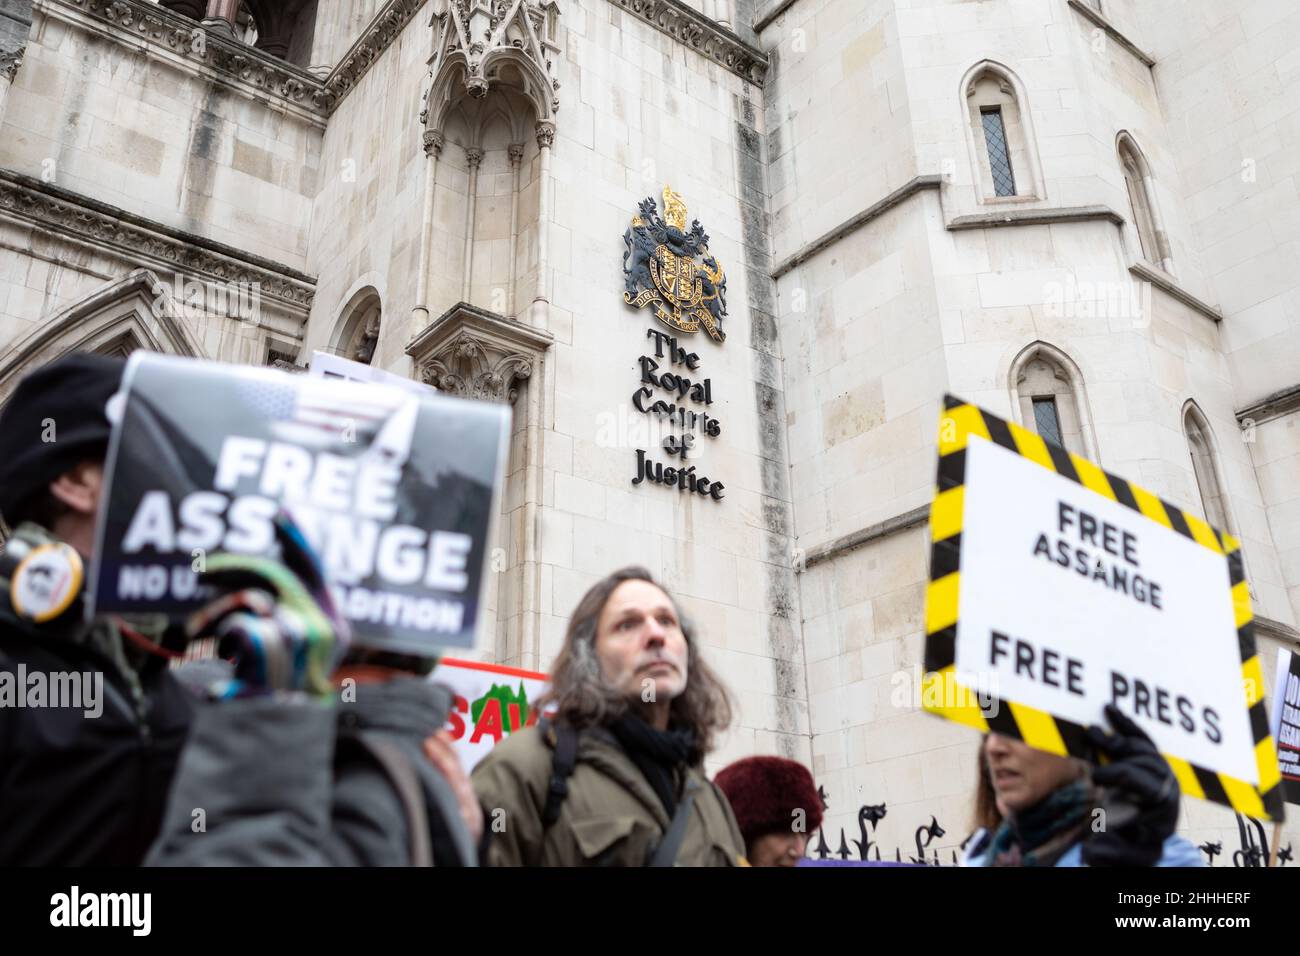 Die Demonstranten sahen Plakate mit den Aufschrift "Free Assange" und "Free Assange, Free Press".der britische Oberste Gerichtshof hat Julian Assange die Erlaubnis erteilt, seine Berufung beim Obersten Gerichtshof des Vereinigten Königreichs einzulegen, mit der Begründung, dass der Fall für die breite Öffentlichkeit wichtige rechtliche Aspekte aufwarf. Stella Moris, die Verlobte von Julian Assange, erschien vor den königlichen Gerichtshöfen, um eine Erklärung abzugeben, in der die jüngste Entscheidung bekanntgegeben wurde. Im Dezember 2021 entschied der Oberste Gerichtshof, dass Assange an die USA ausgeliefert werden kann, wo er verschiedene Verbrechen gemäß dem Spionagegesetz angeklagt wurde. (Foto von Belinda Jiao/S Stockfoto